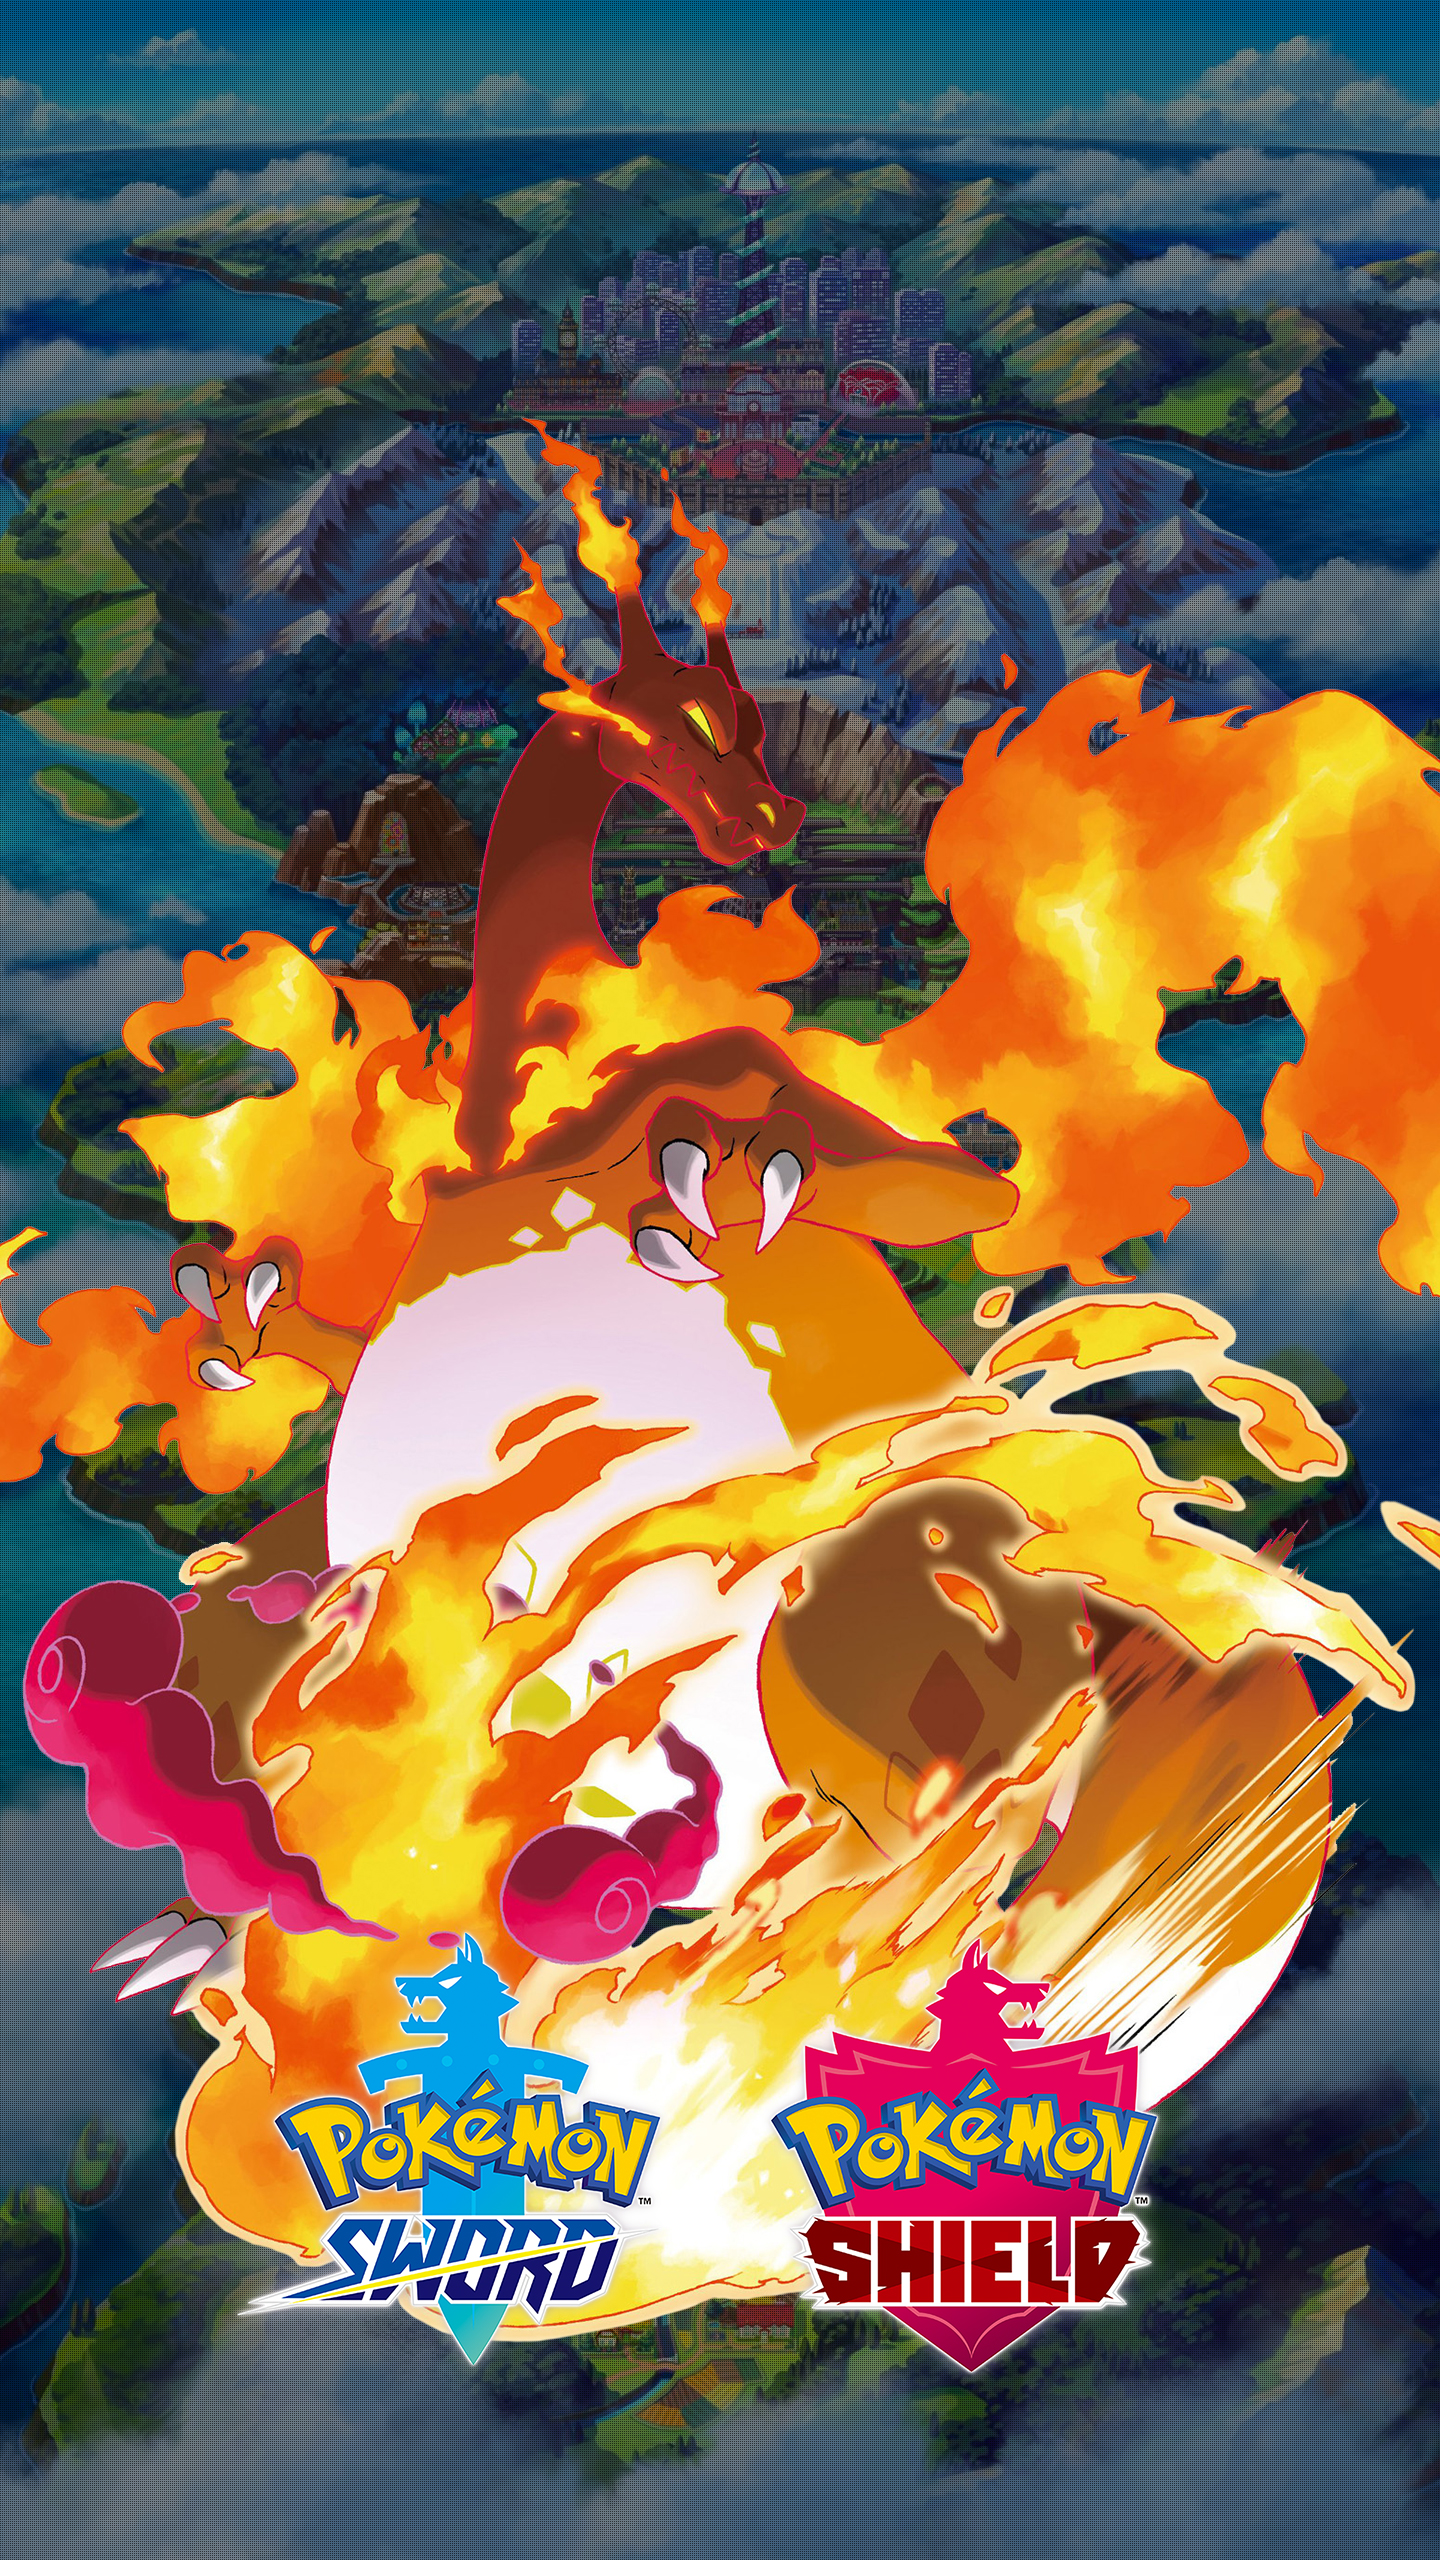 Pokemon Charizard Wallpaper - 1440x2560 Wallpaper 